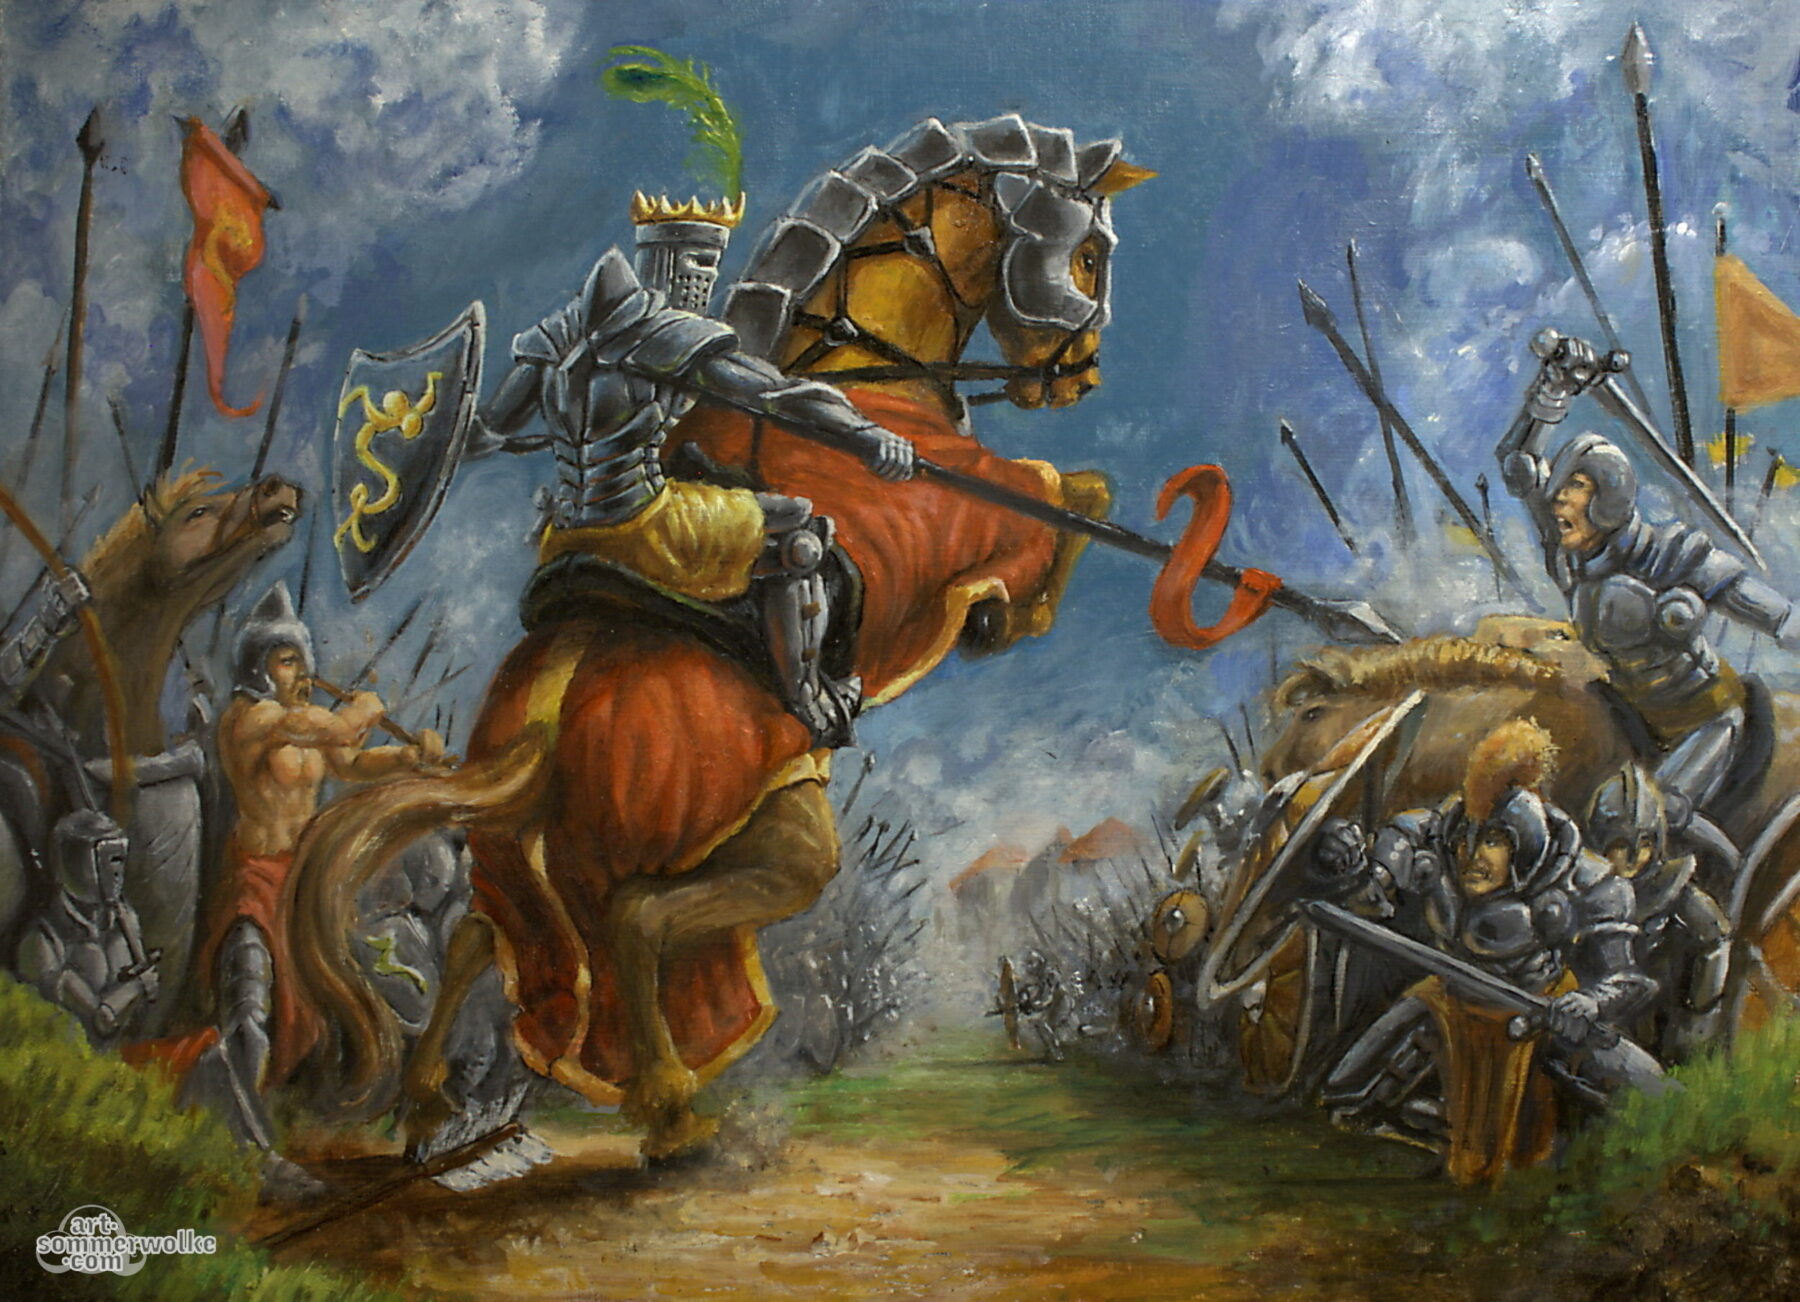 Gemälde einer mittelalterlichen Fantasy Schlacht. In der Mitte ist ein Ritter auf einem sich aufbäumenden Ross. Painting of a medival fantasy battle. In its center is a Knight on a horse.